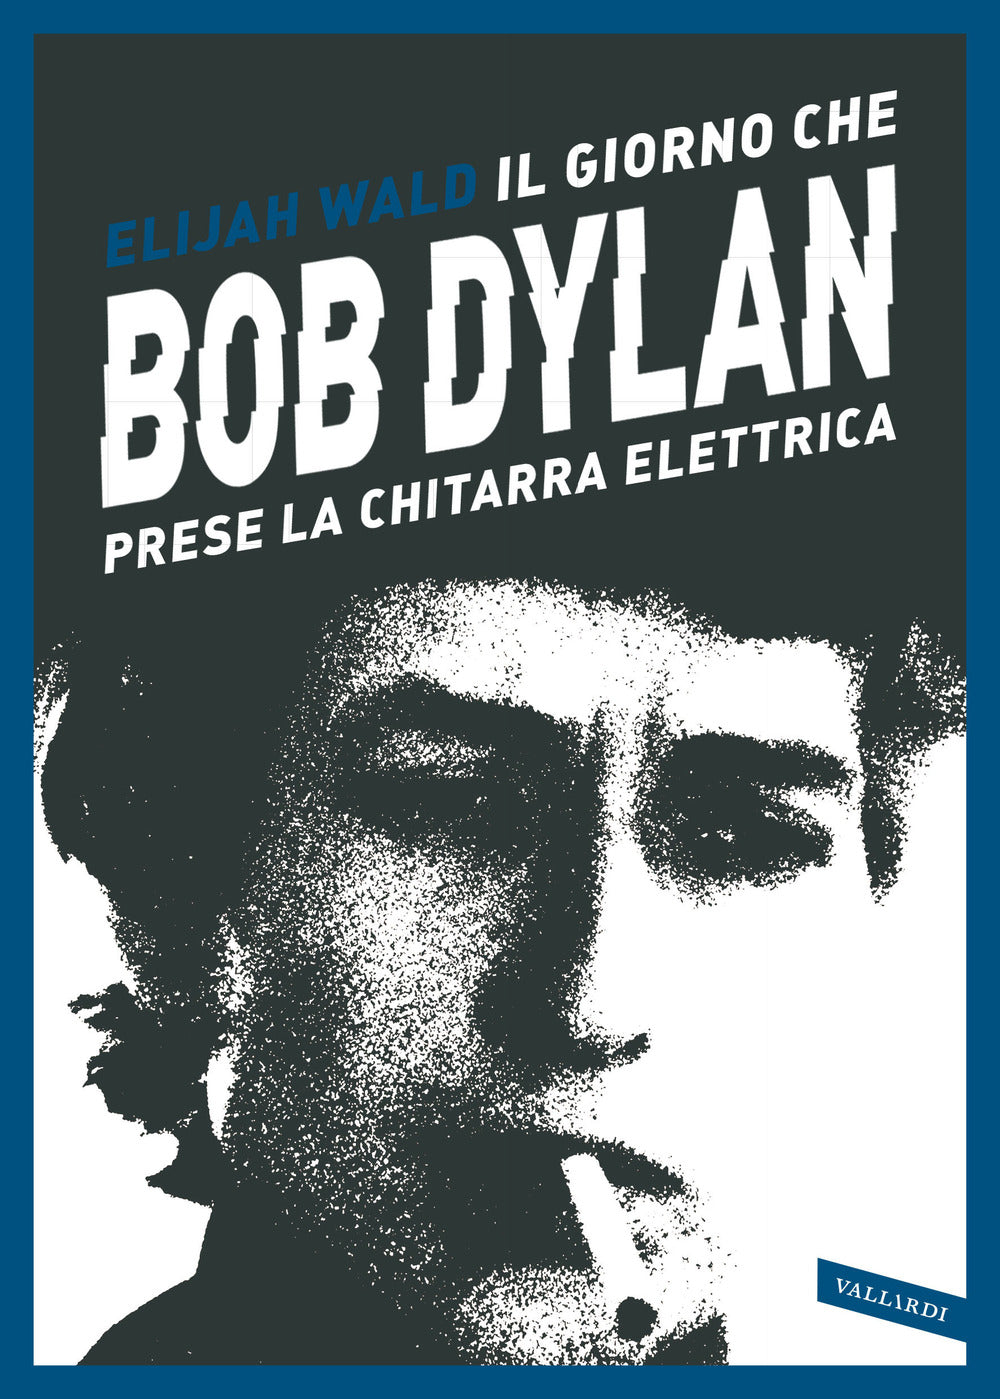 Il giorno che Bob Dylan prese la chitarra elettrica.